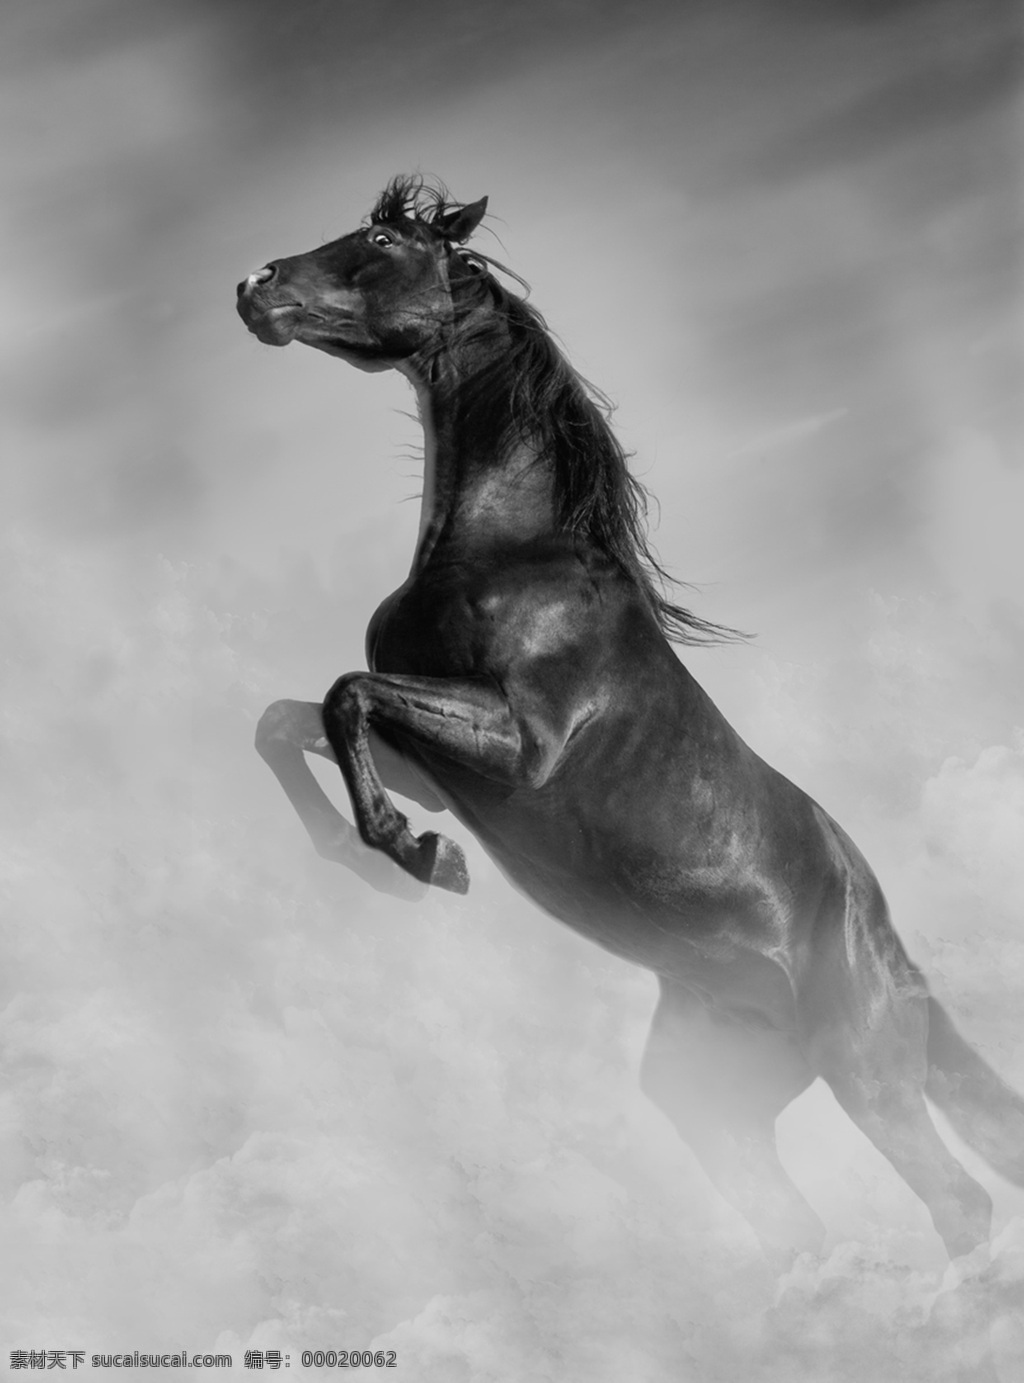 黑马 奔跑 朦胧 黑毛 跳起 生物世界 野生动物